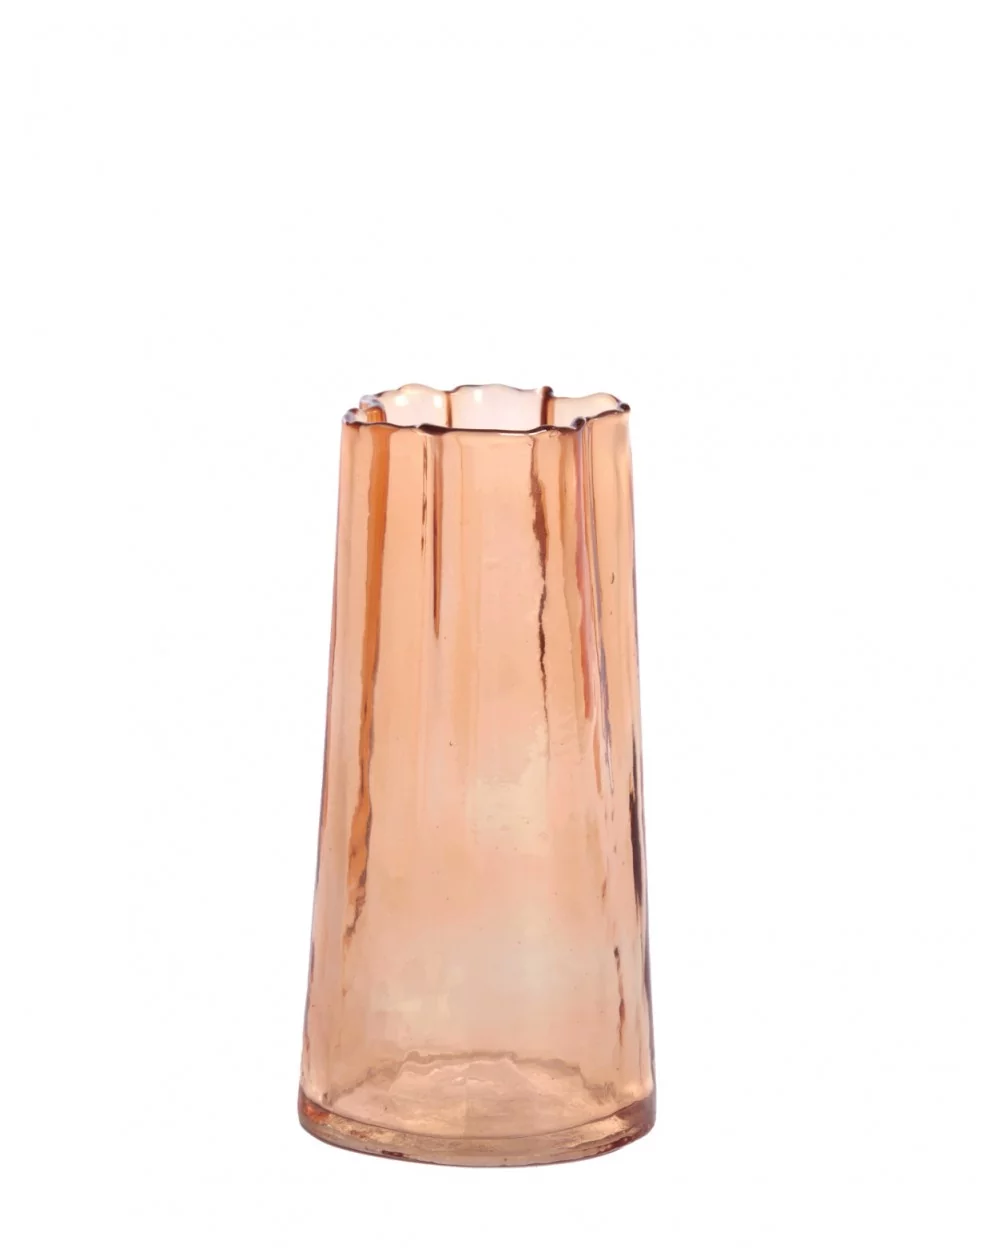 Sklenená váza MURADA, light brown, 20 cm